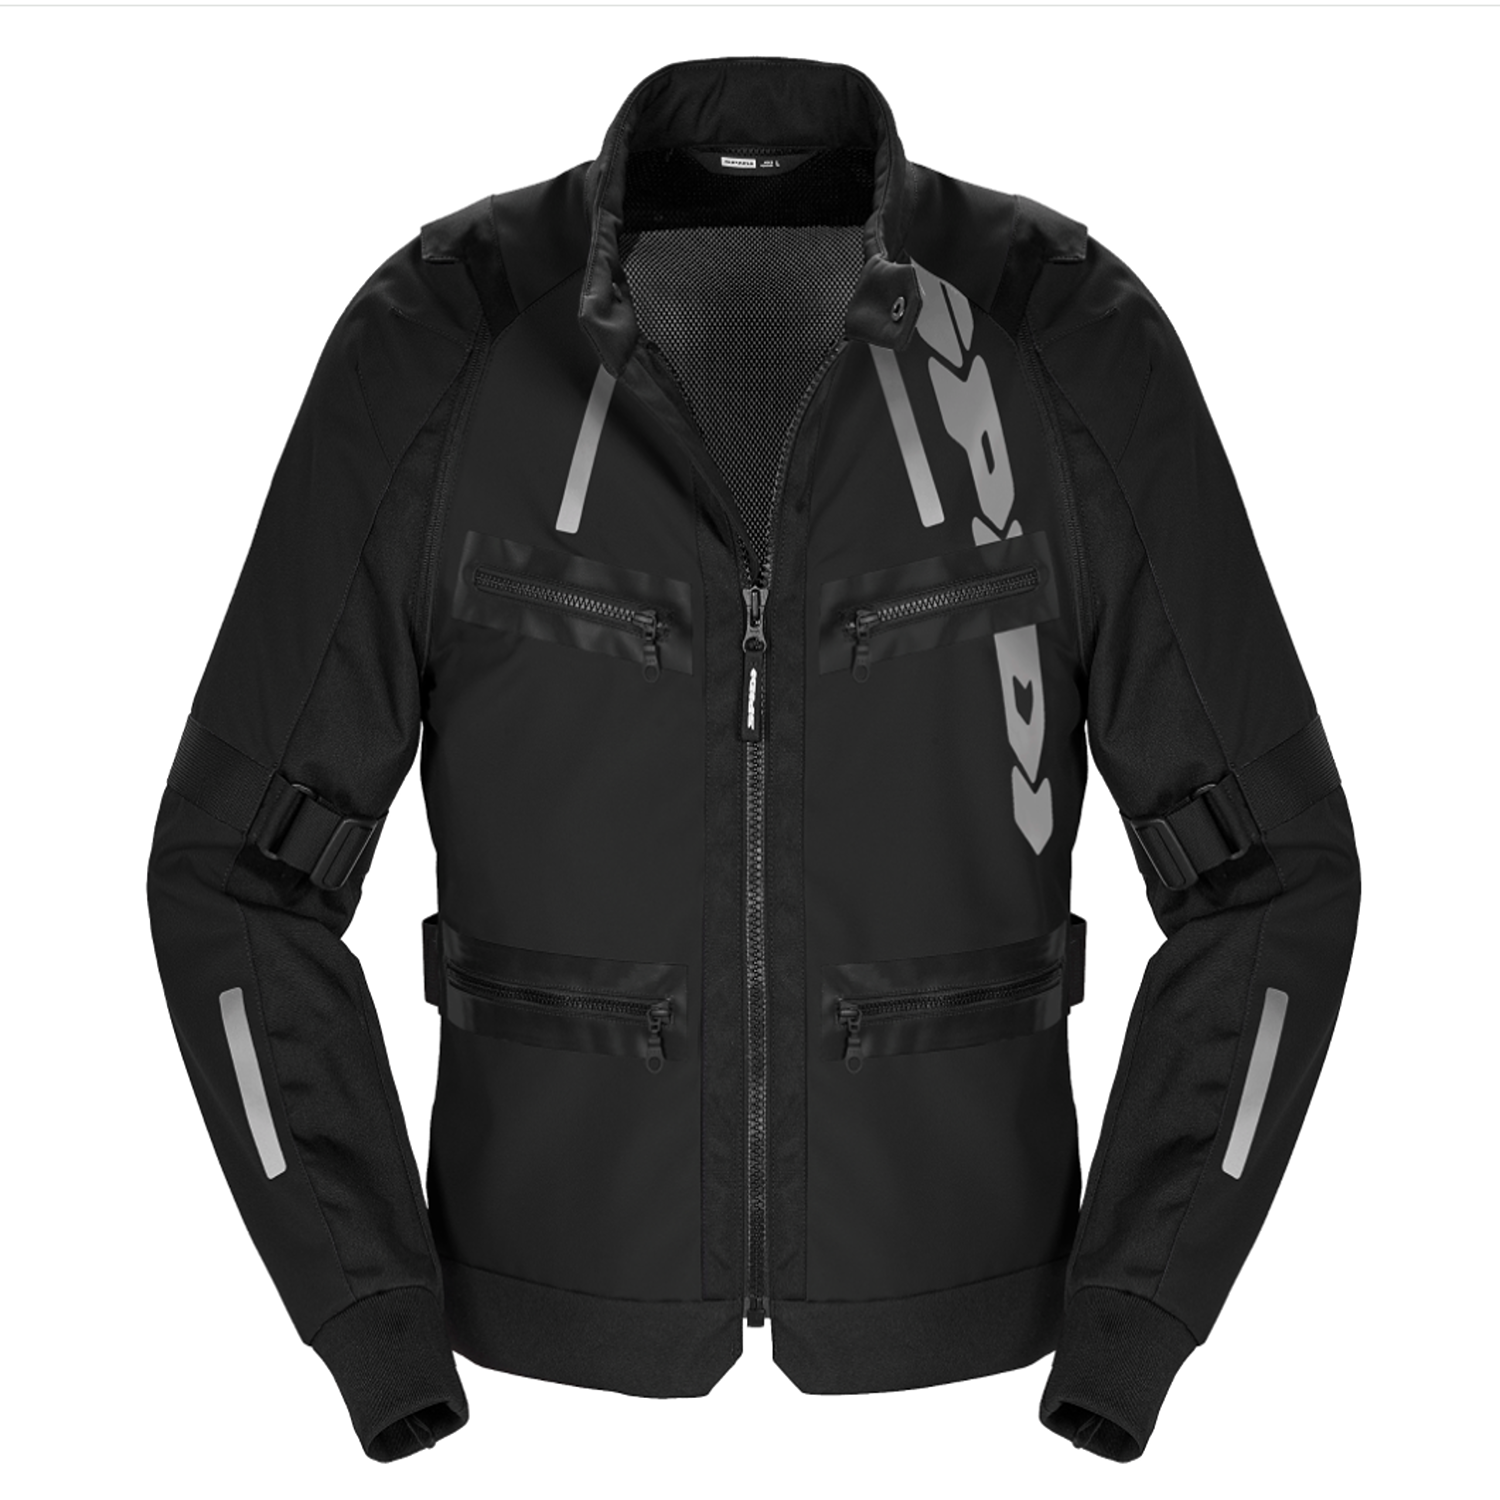 Image of Spidi Enduro Pro Jacket Black Size S ID 8030161484991